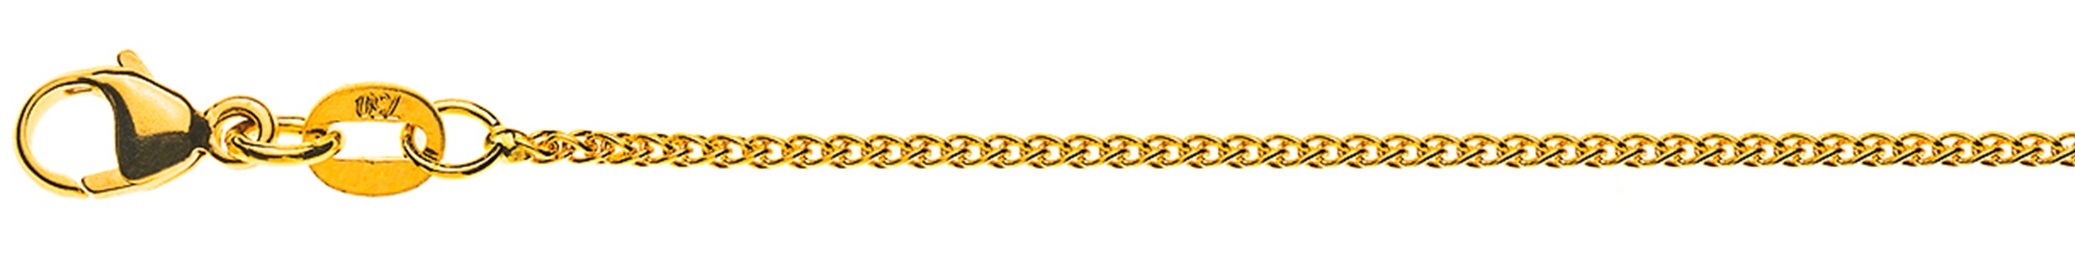 AURONOS Élégance Collier en or jaune 14K torsadé 40cm 1.2mm